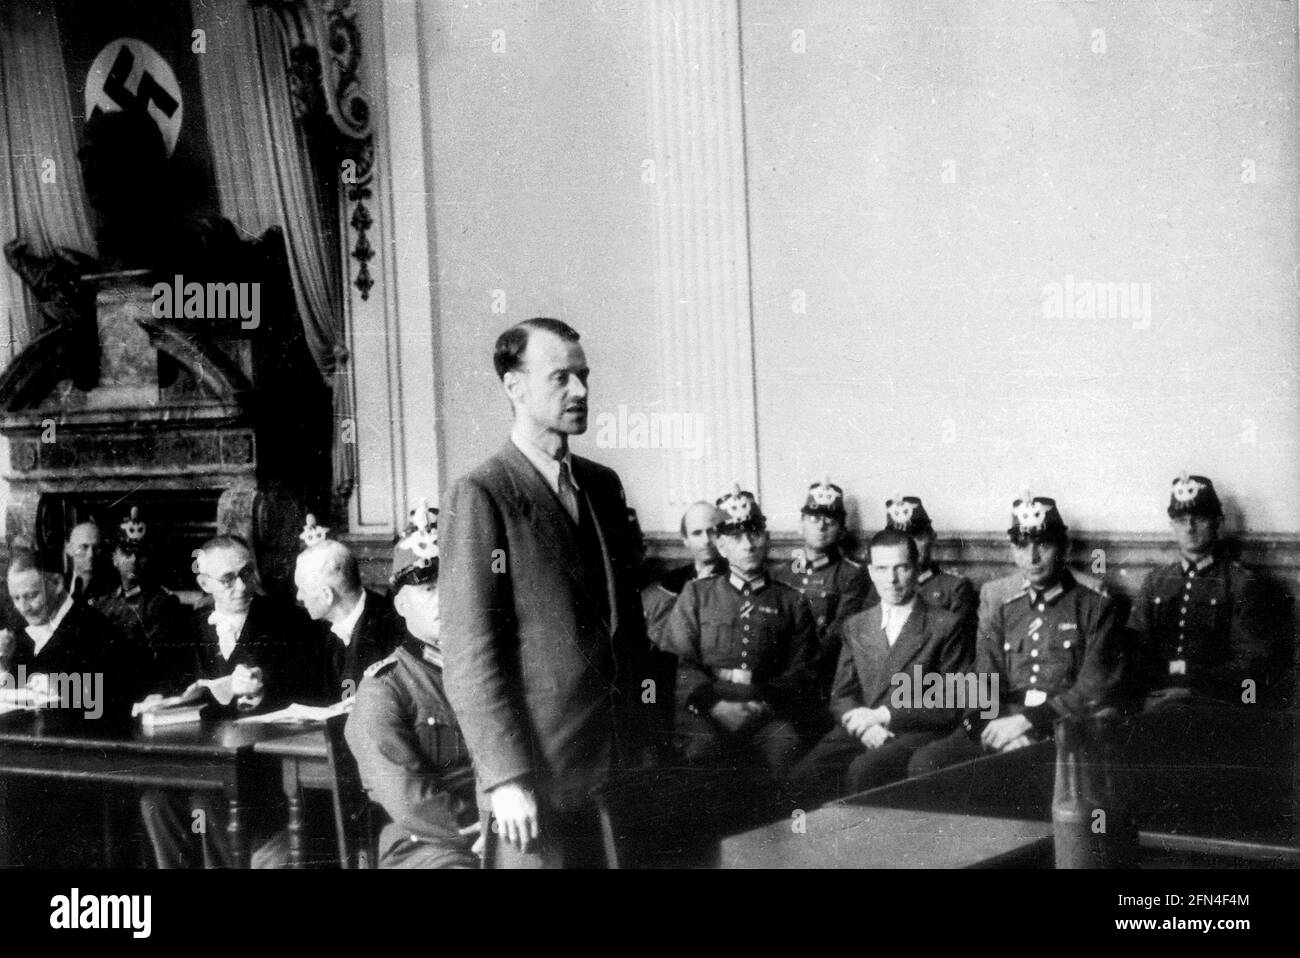 Haeften, Hans Bernd von, 18.12.1905 - 15.8.1944, diplomate allemand, devant la Cour des peuples, Berlin, 8.8.1944, À USAGE ÉDITORIAL EXCLUSIF Banque D'Images